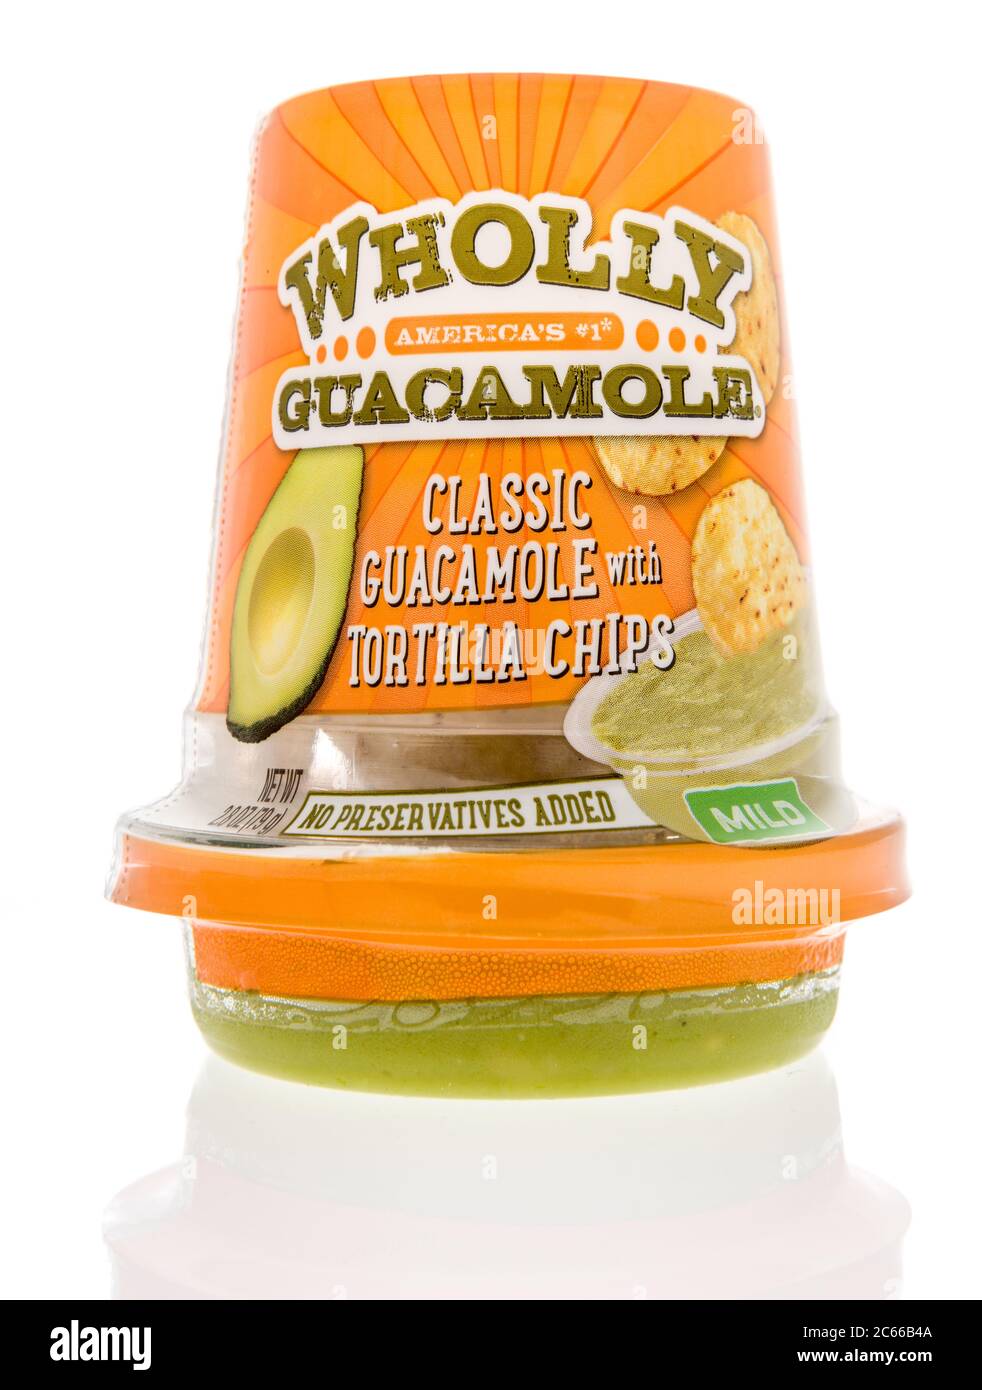 Winneconne, WI - 26 Juni 2020: Ein Paket von ganz Guacamole Klassiker mit Tortilla Chips auf einem isolierten Hintergrund Stockfoto